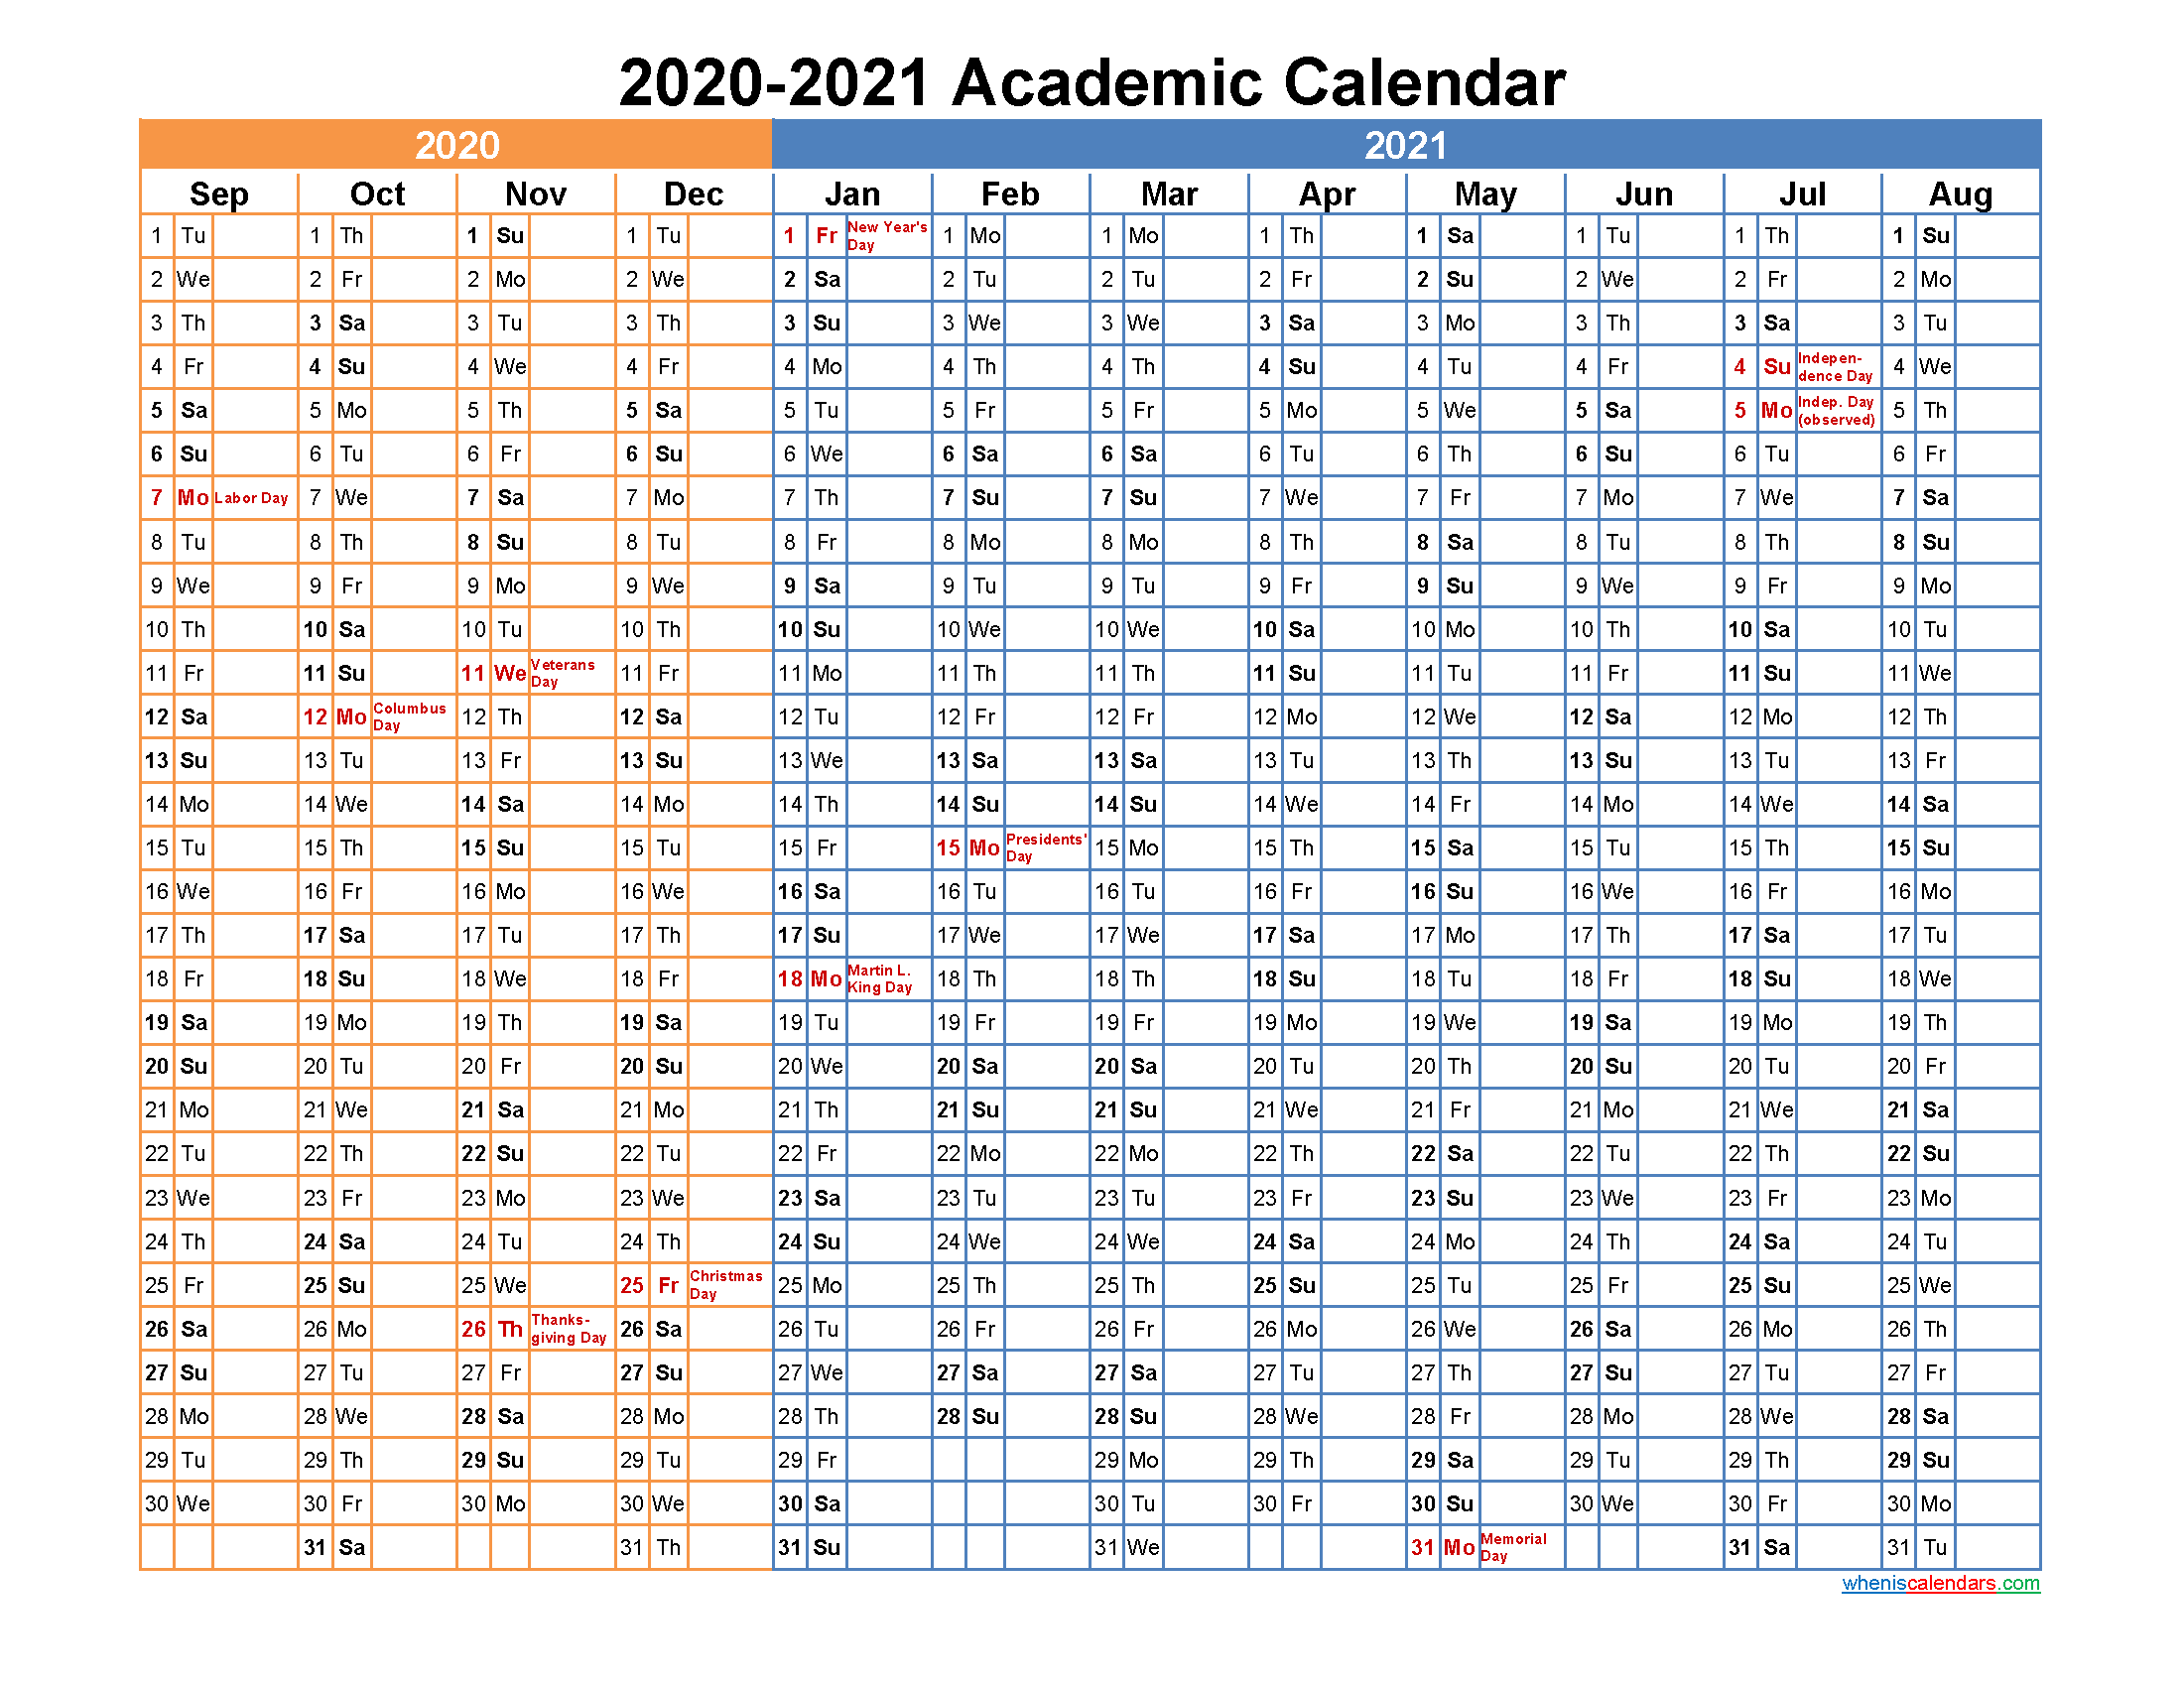 Academic Calendar 2020 and 2021 Printable. 